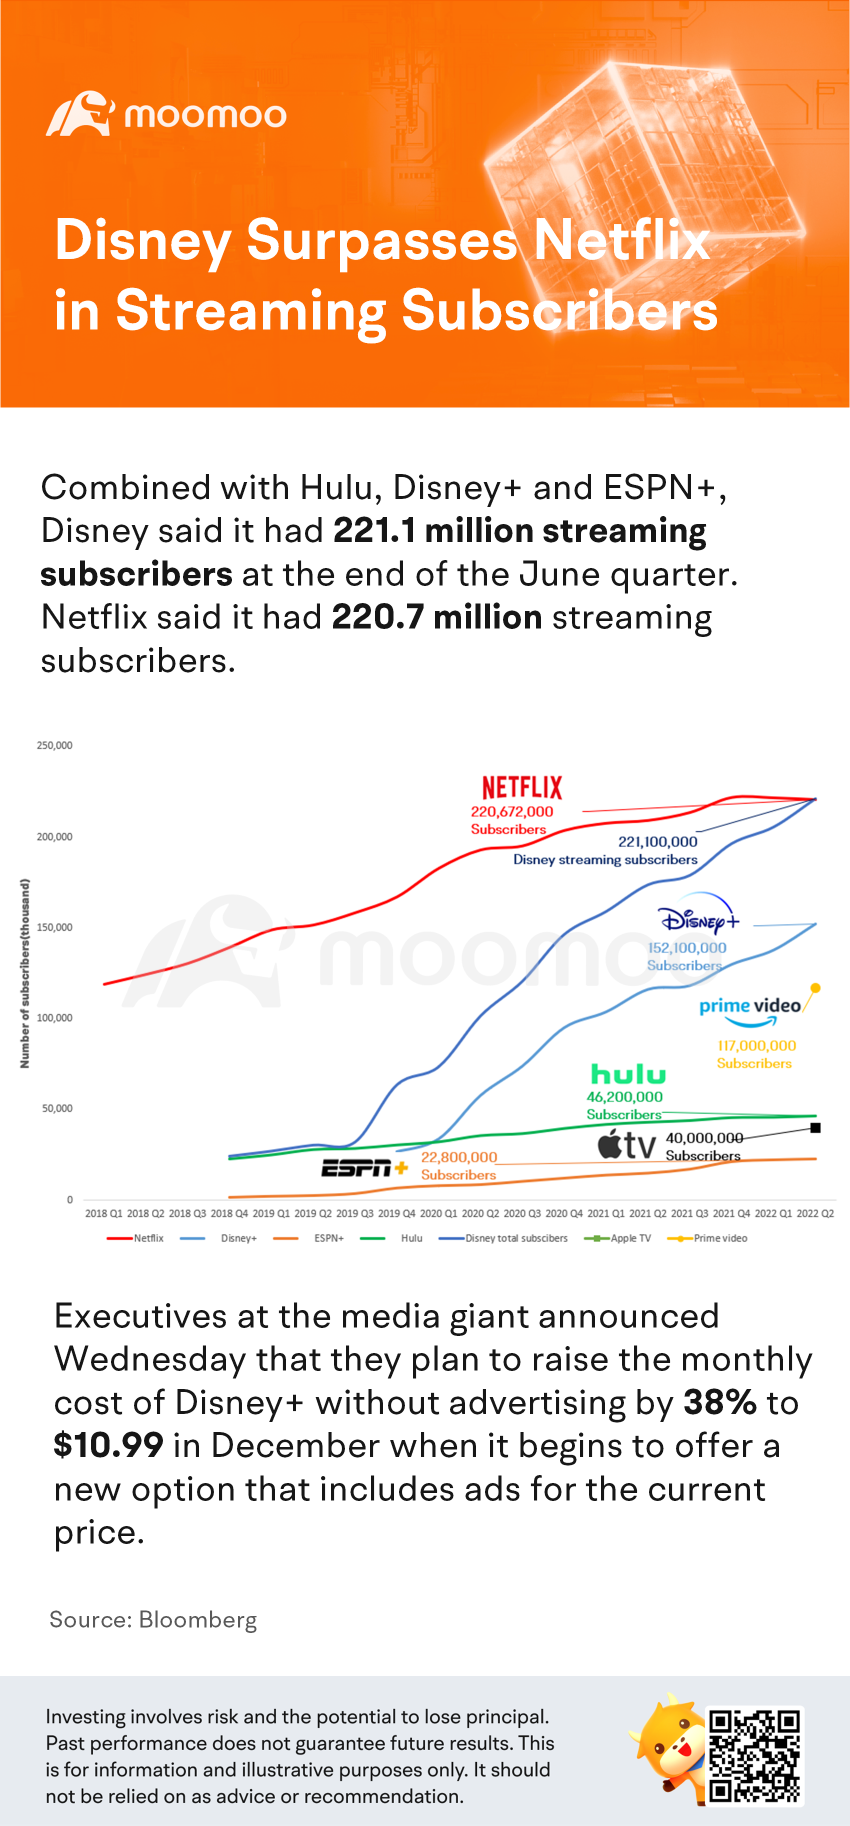 迪士尼在流媒體訂閱者方面超越 Netflix